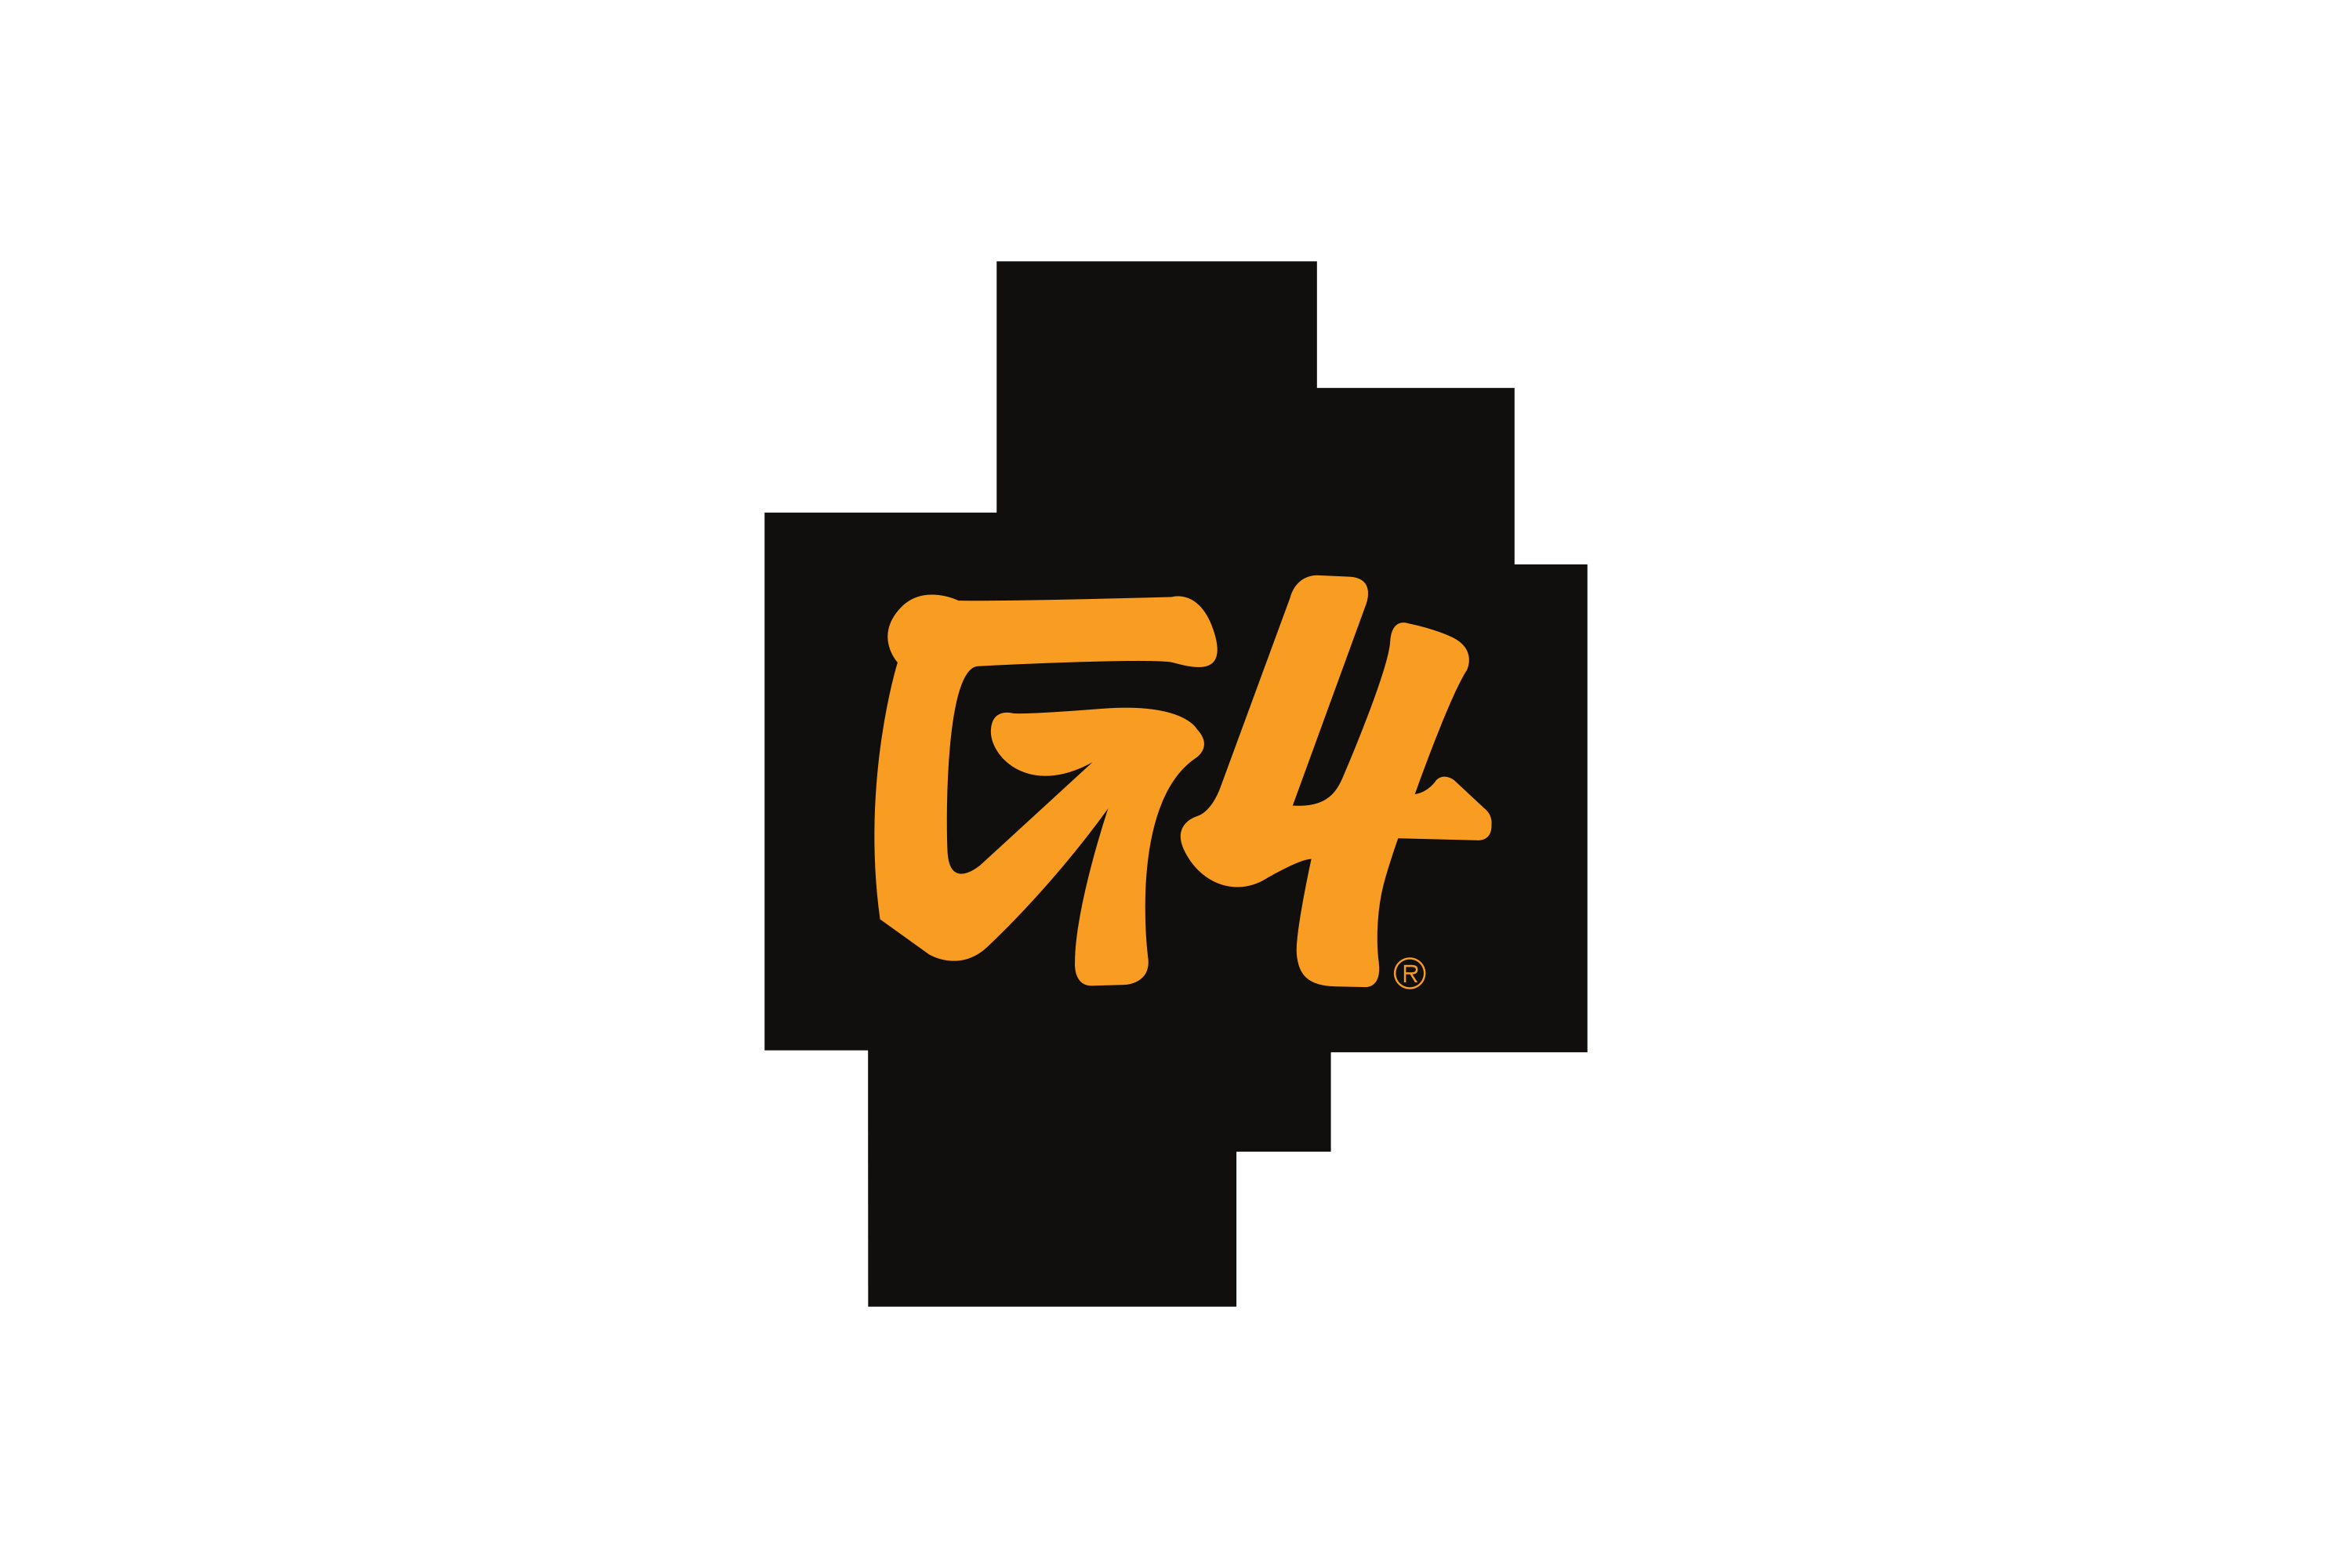 Download G4 Logo in SVG Vector or PNG File Format - Logo.wine